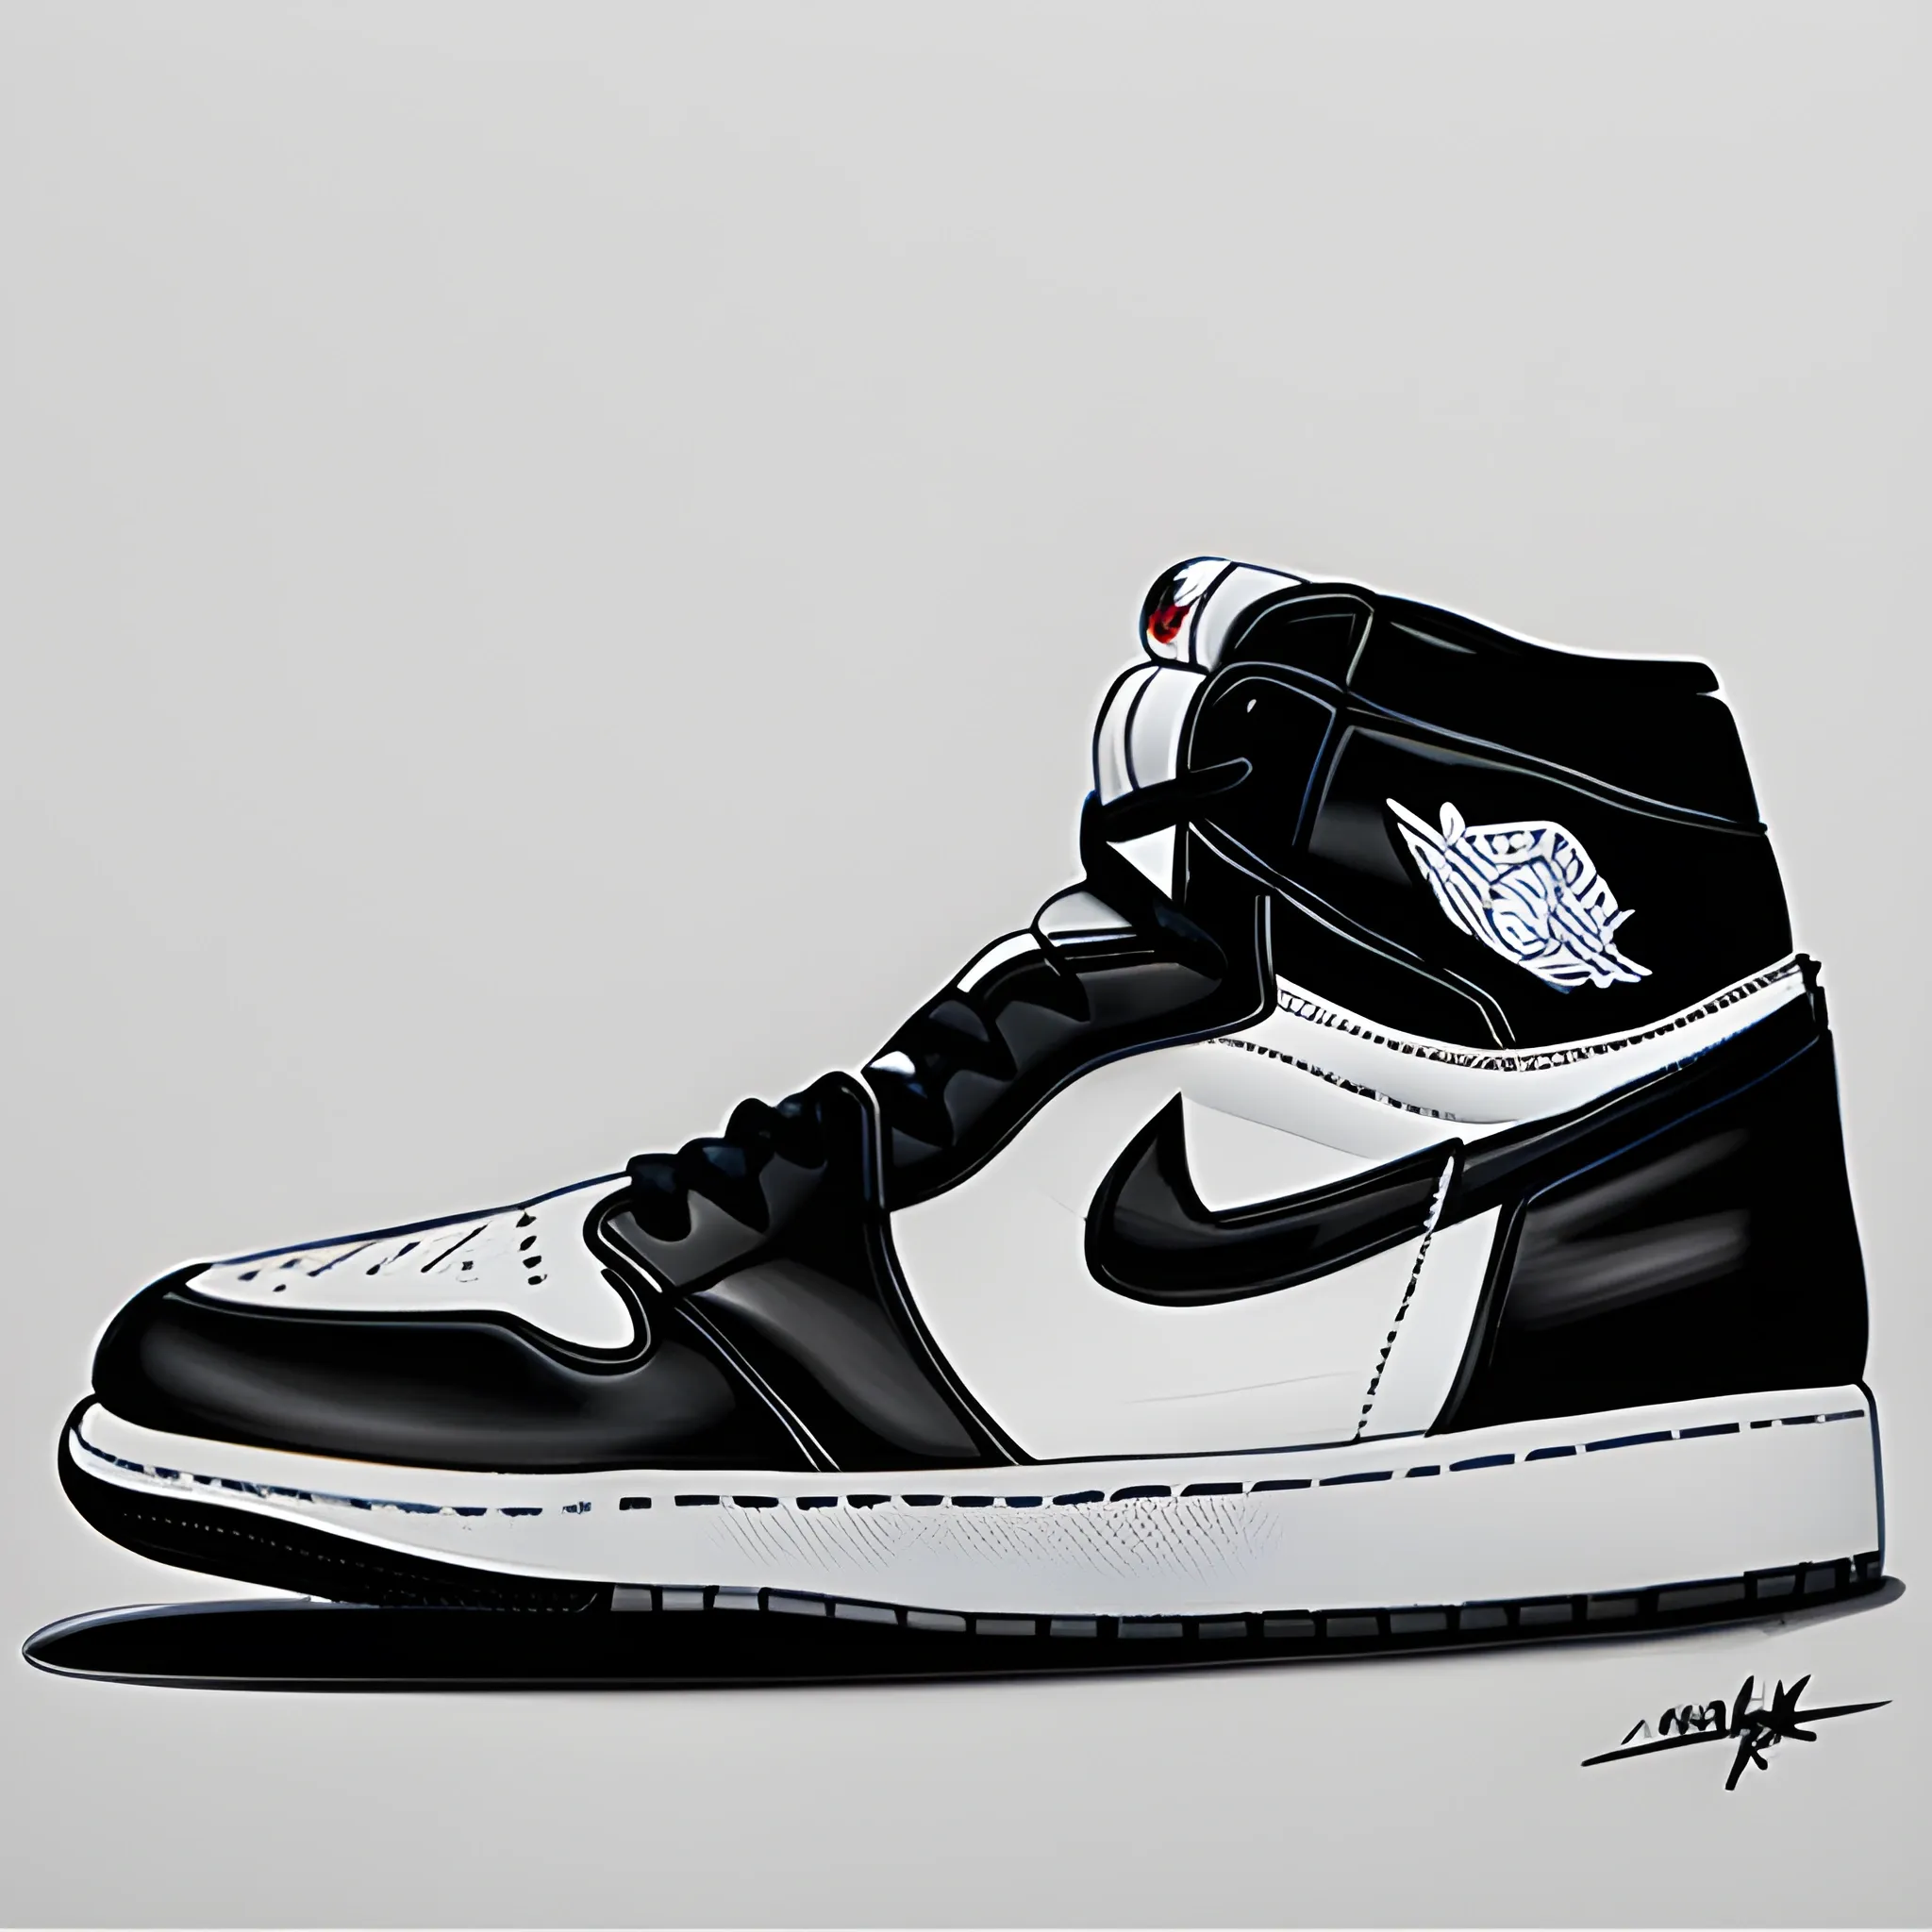 8k, realistic black and white air jordan 1 sneakers
, Pencil Sketch